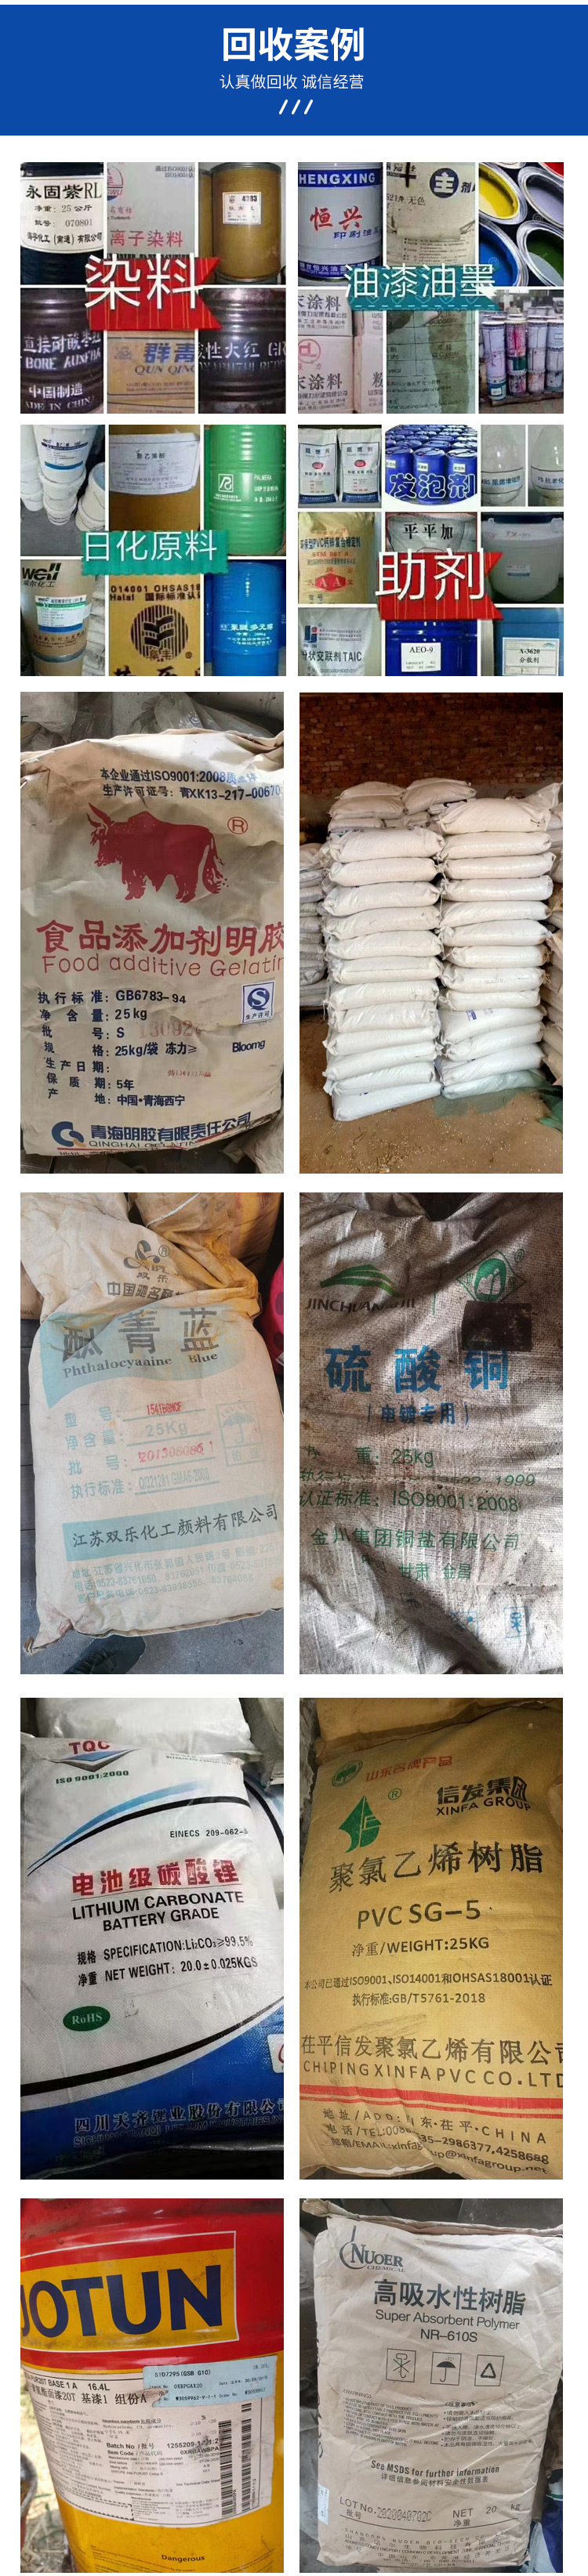 杭州回收钛白粉公司